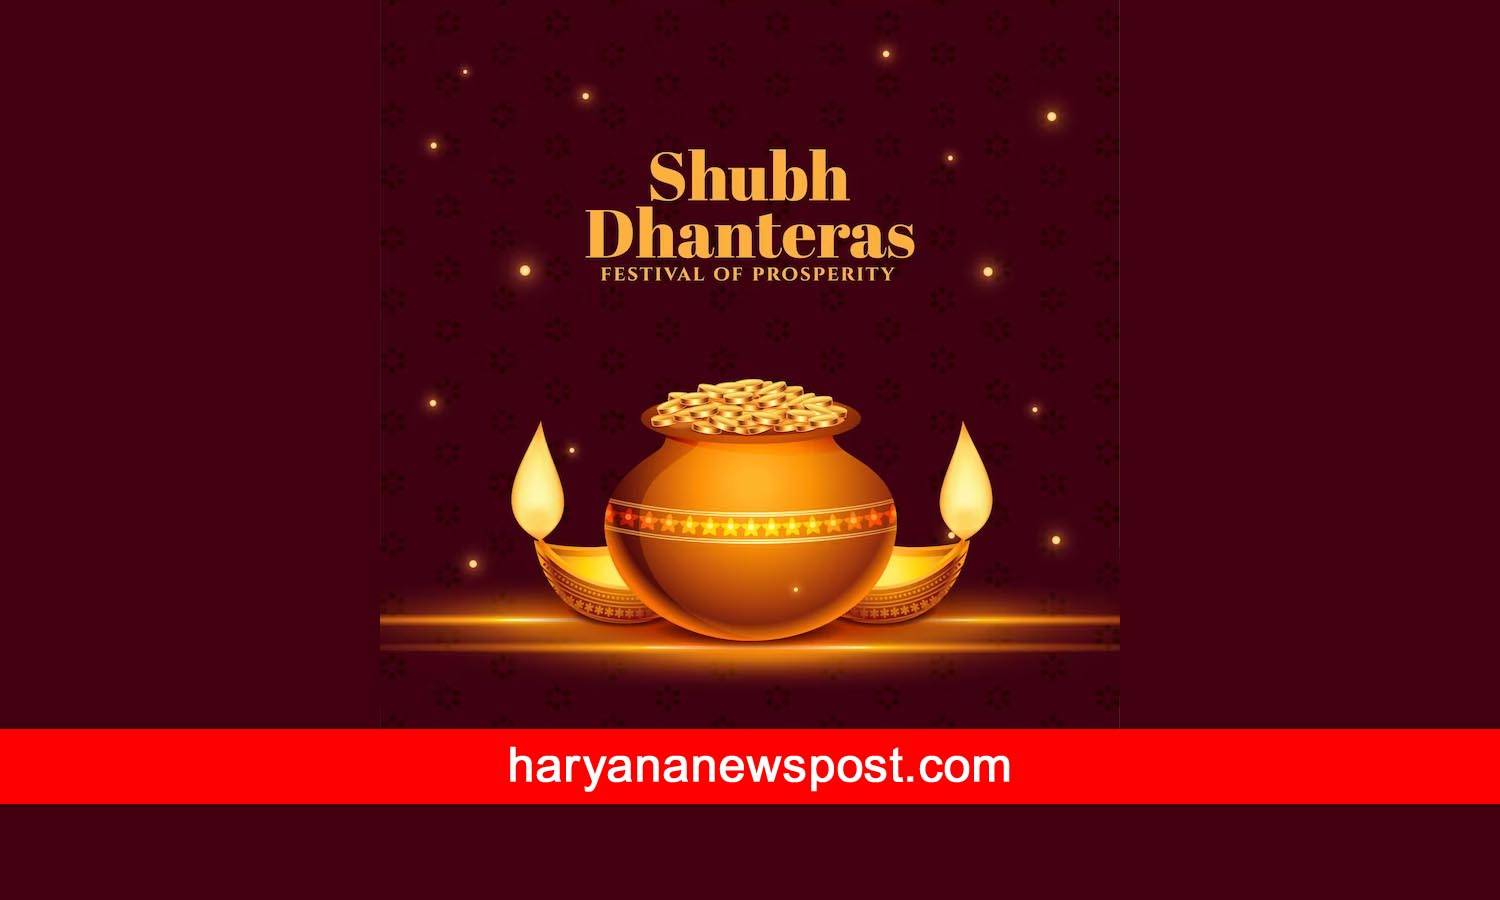 nuh Dhanteras puja muhurat and vidhi